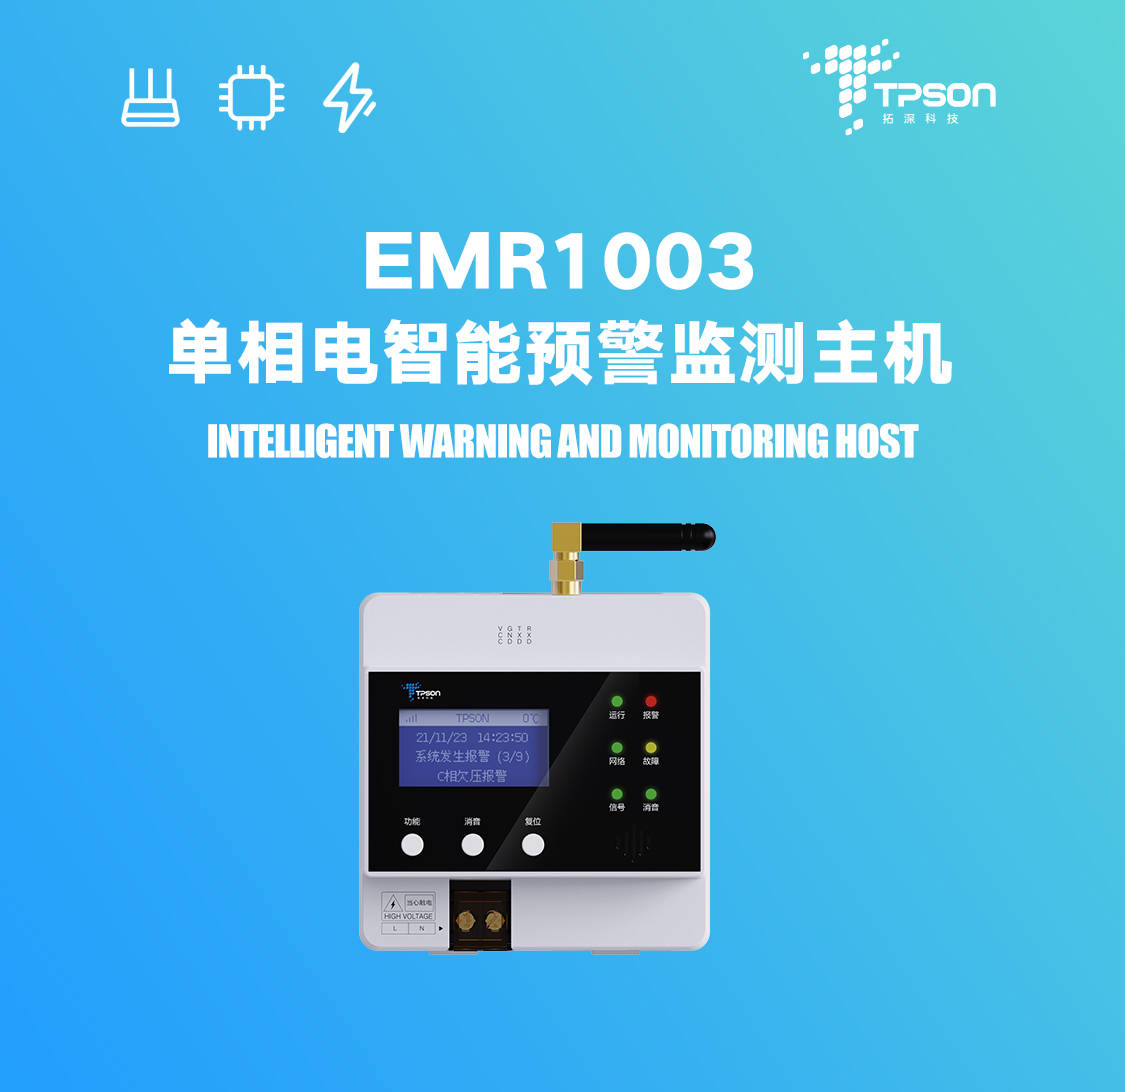 EMR1003单相电智能预警监测主机展示